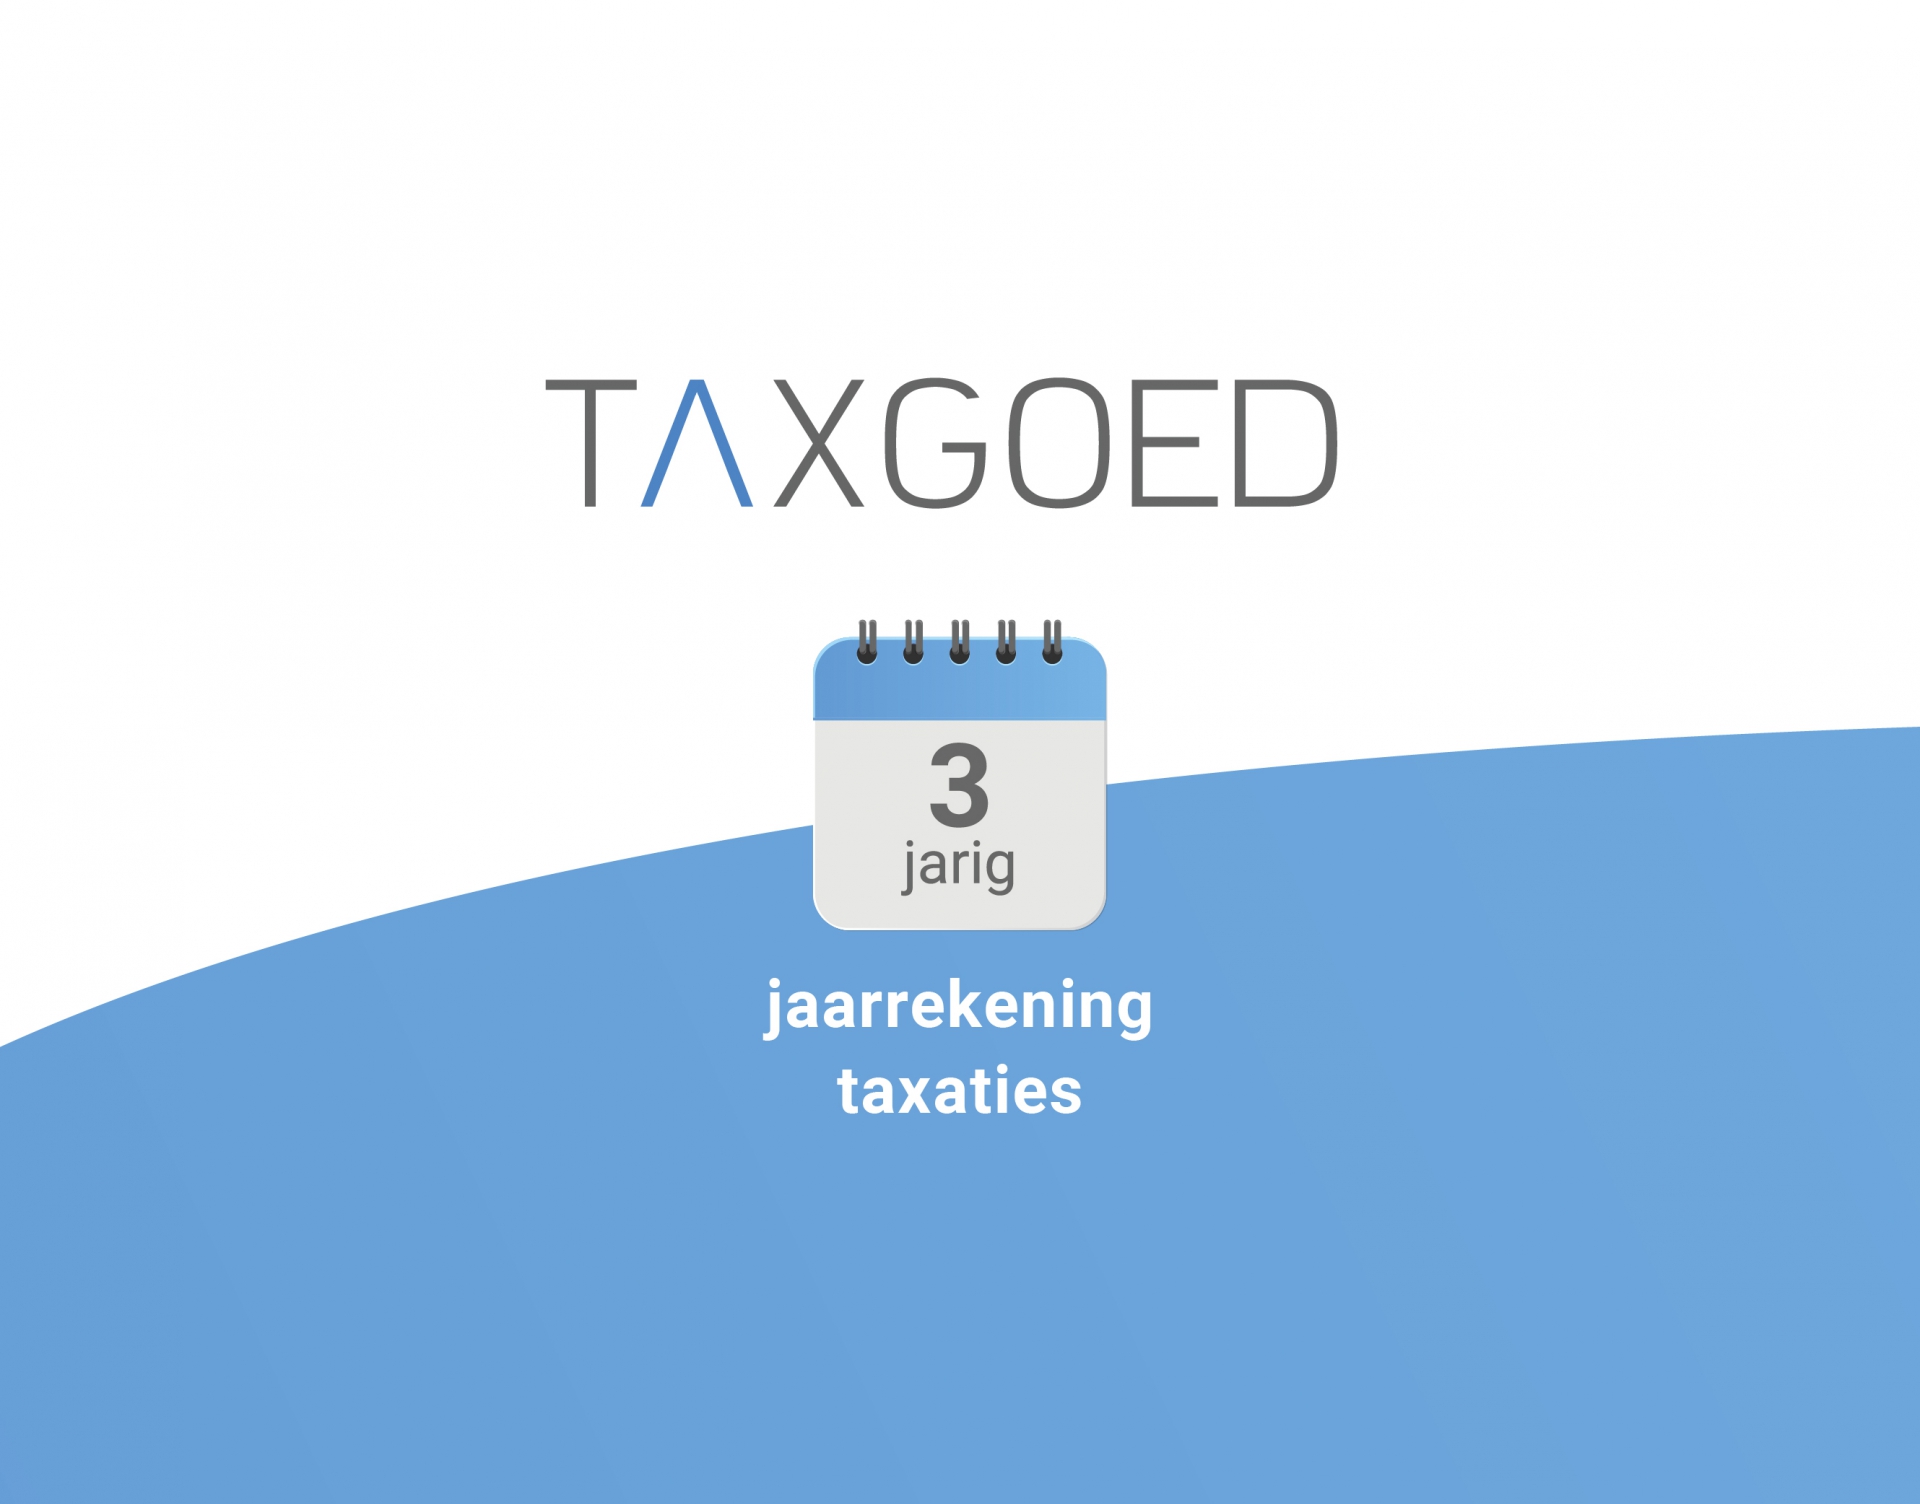 Jaarrekening taxaties